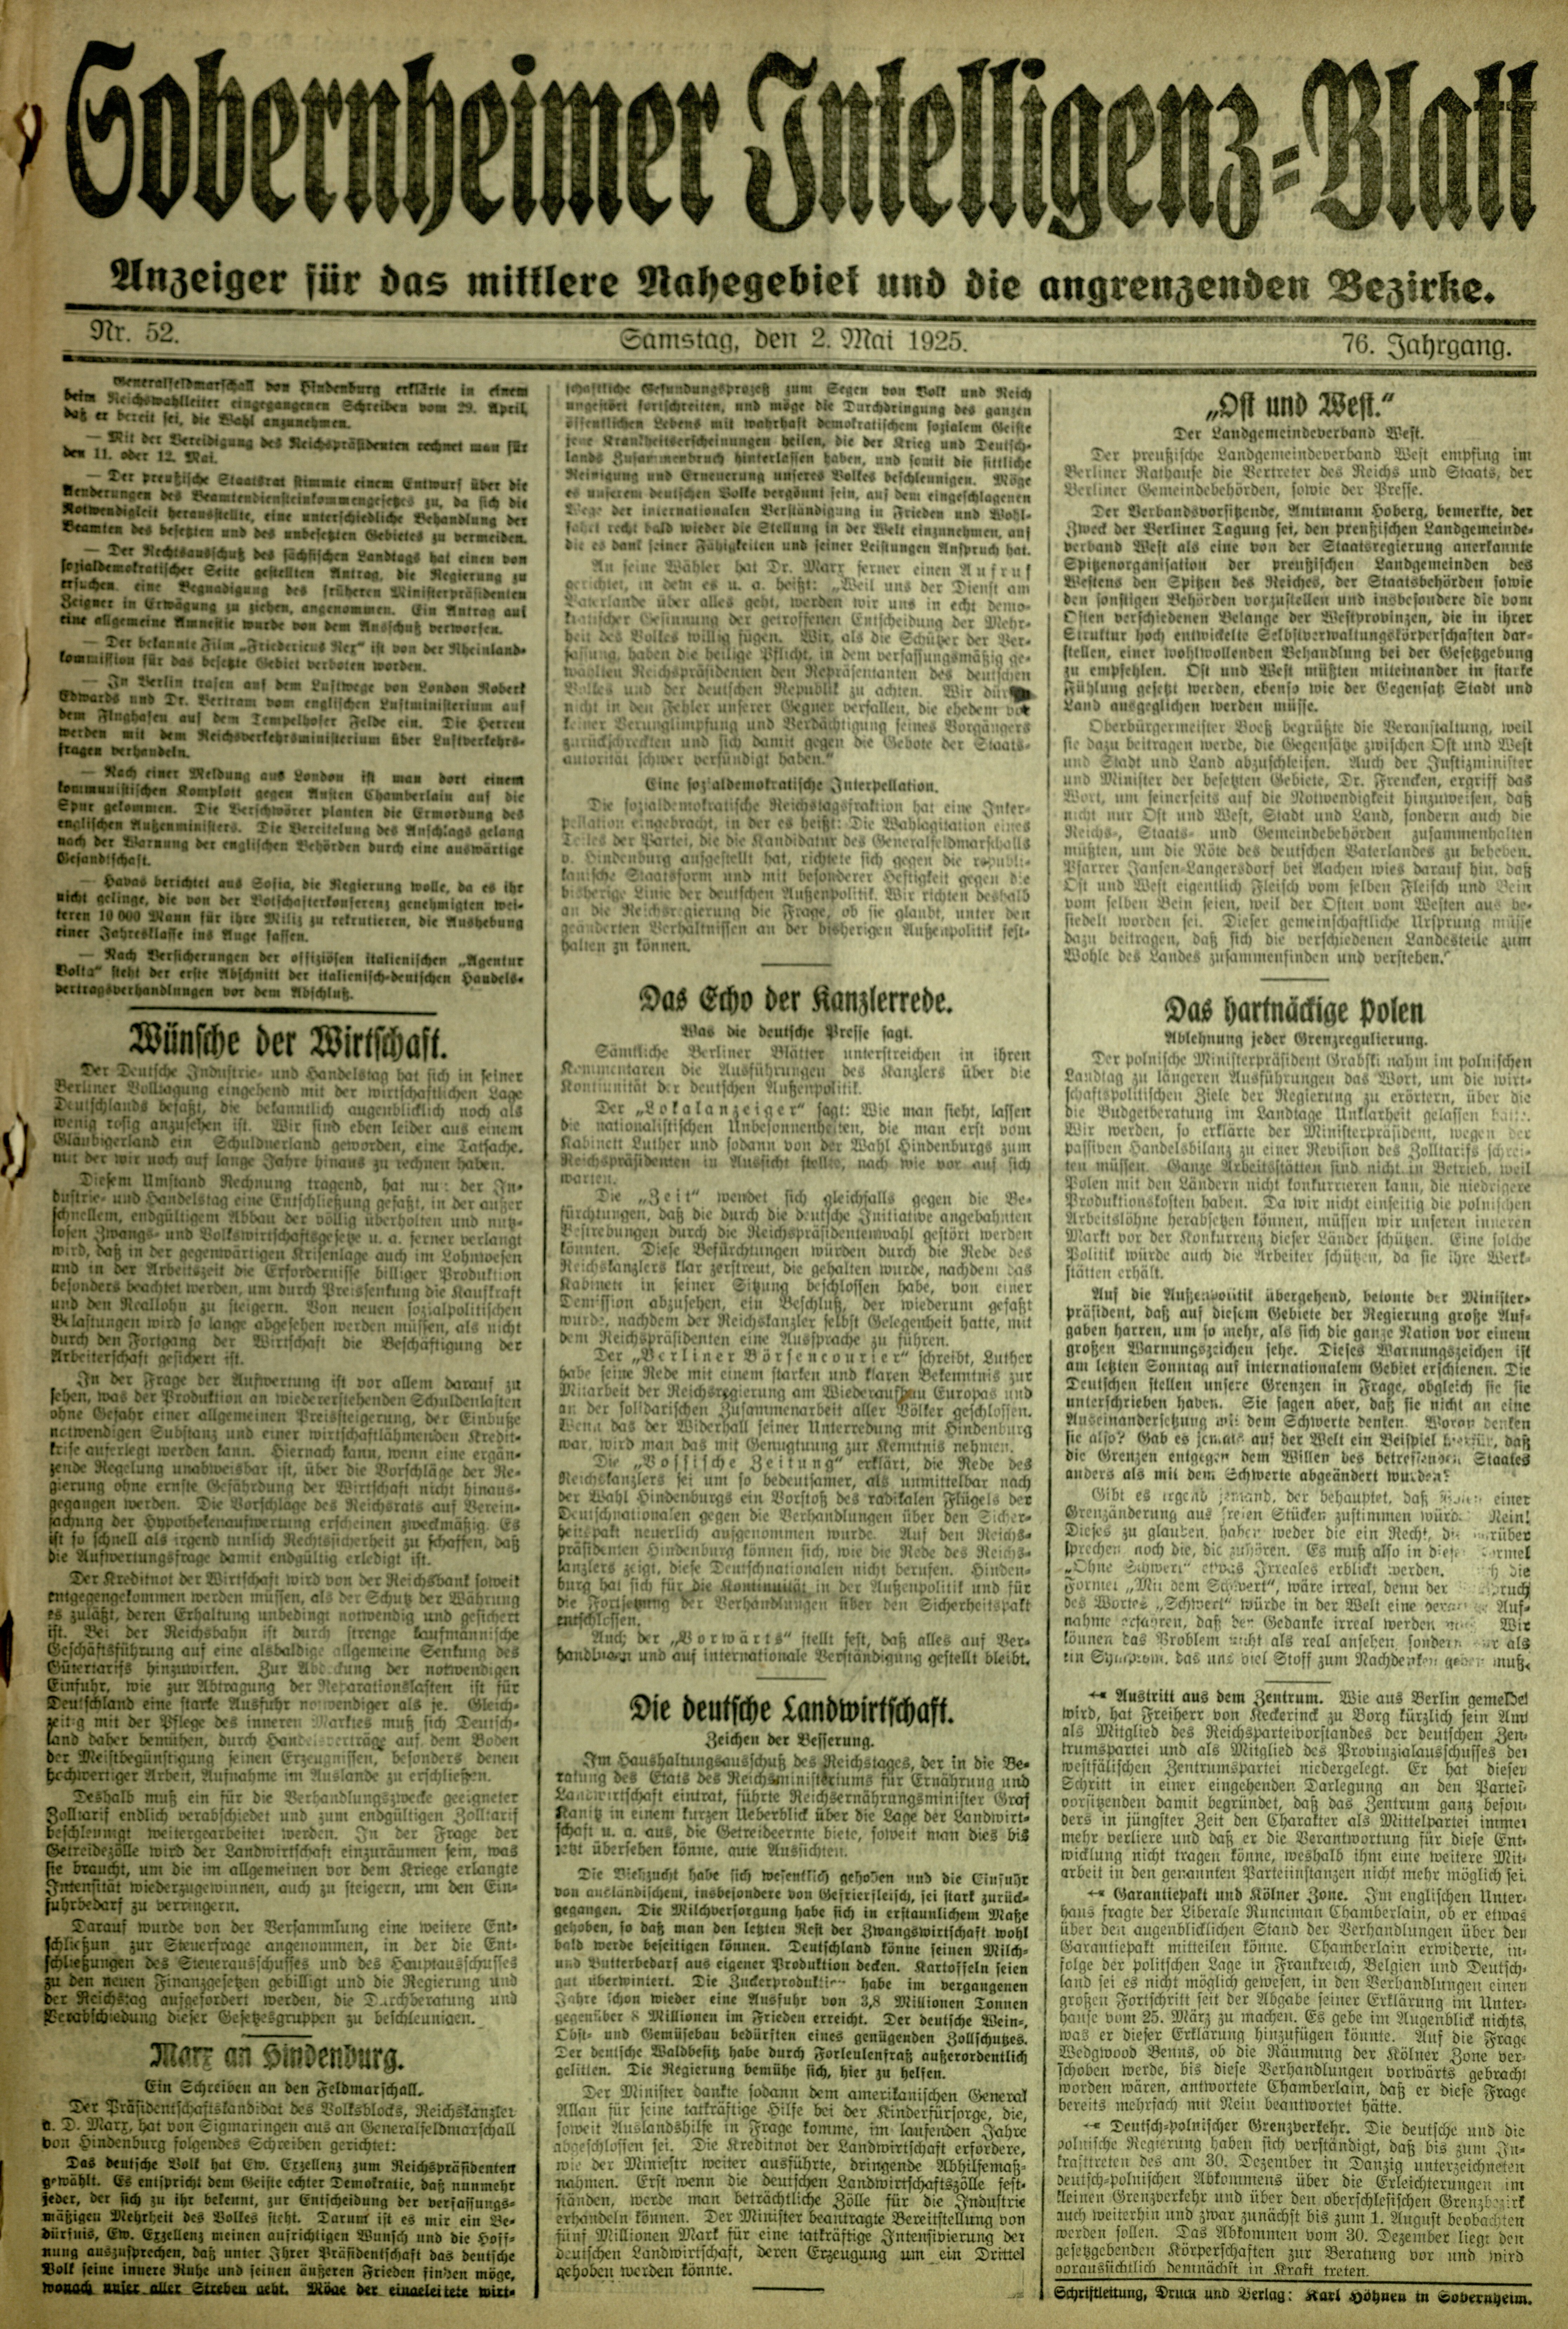 Zeitung: Sobernheimer Intelligenzblatt; Mai 1925, Jg. 73 Nr. 52 (Heimatmuseum Bad Sobernheim CC BY-NC-SA)